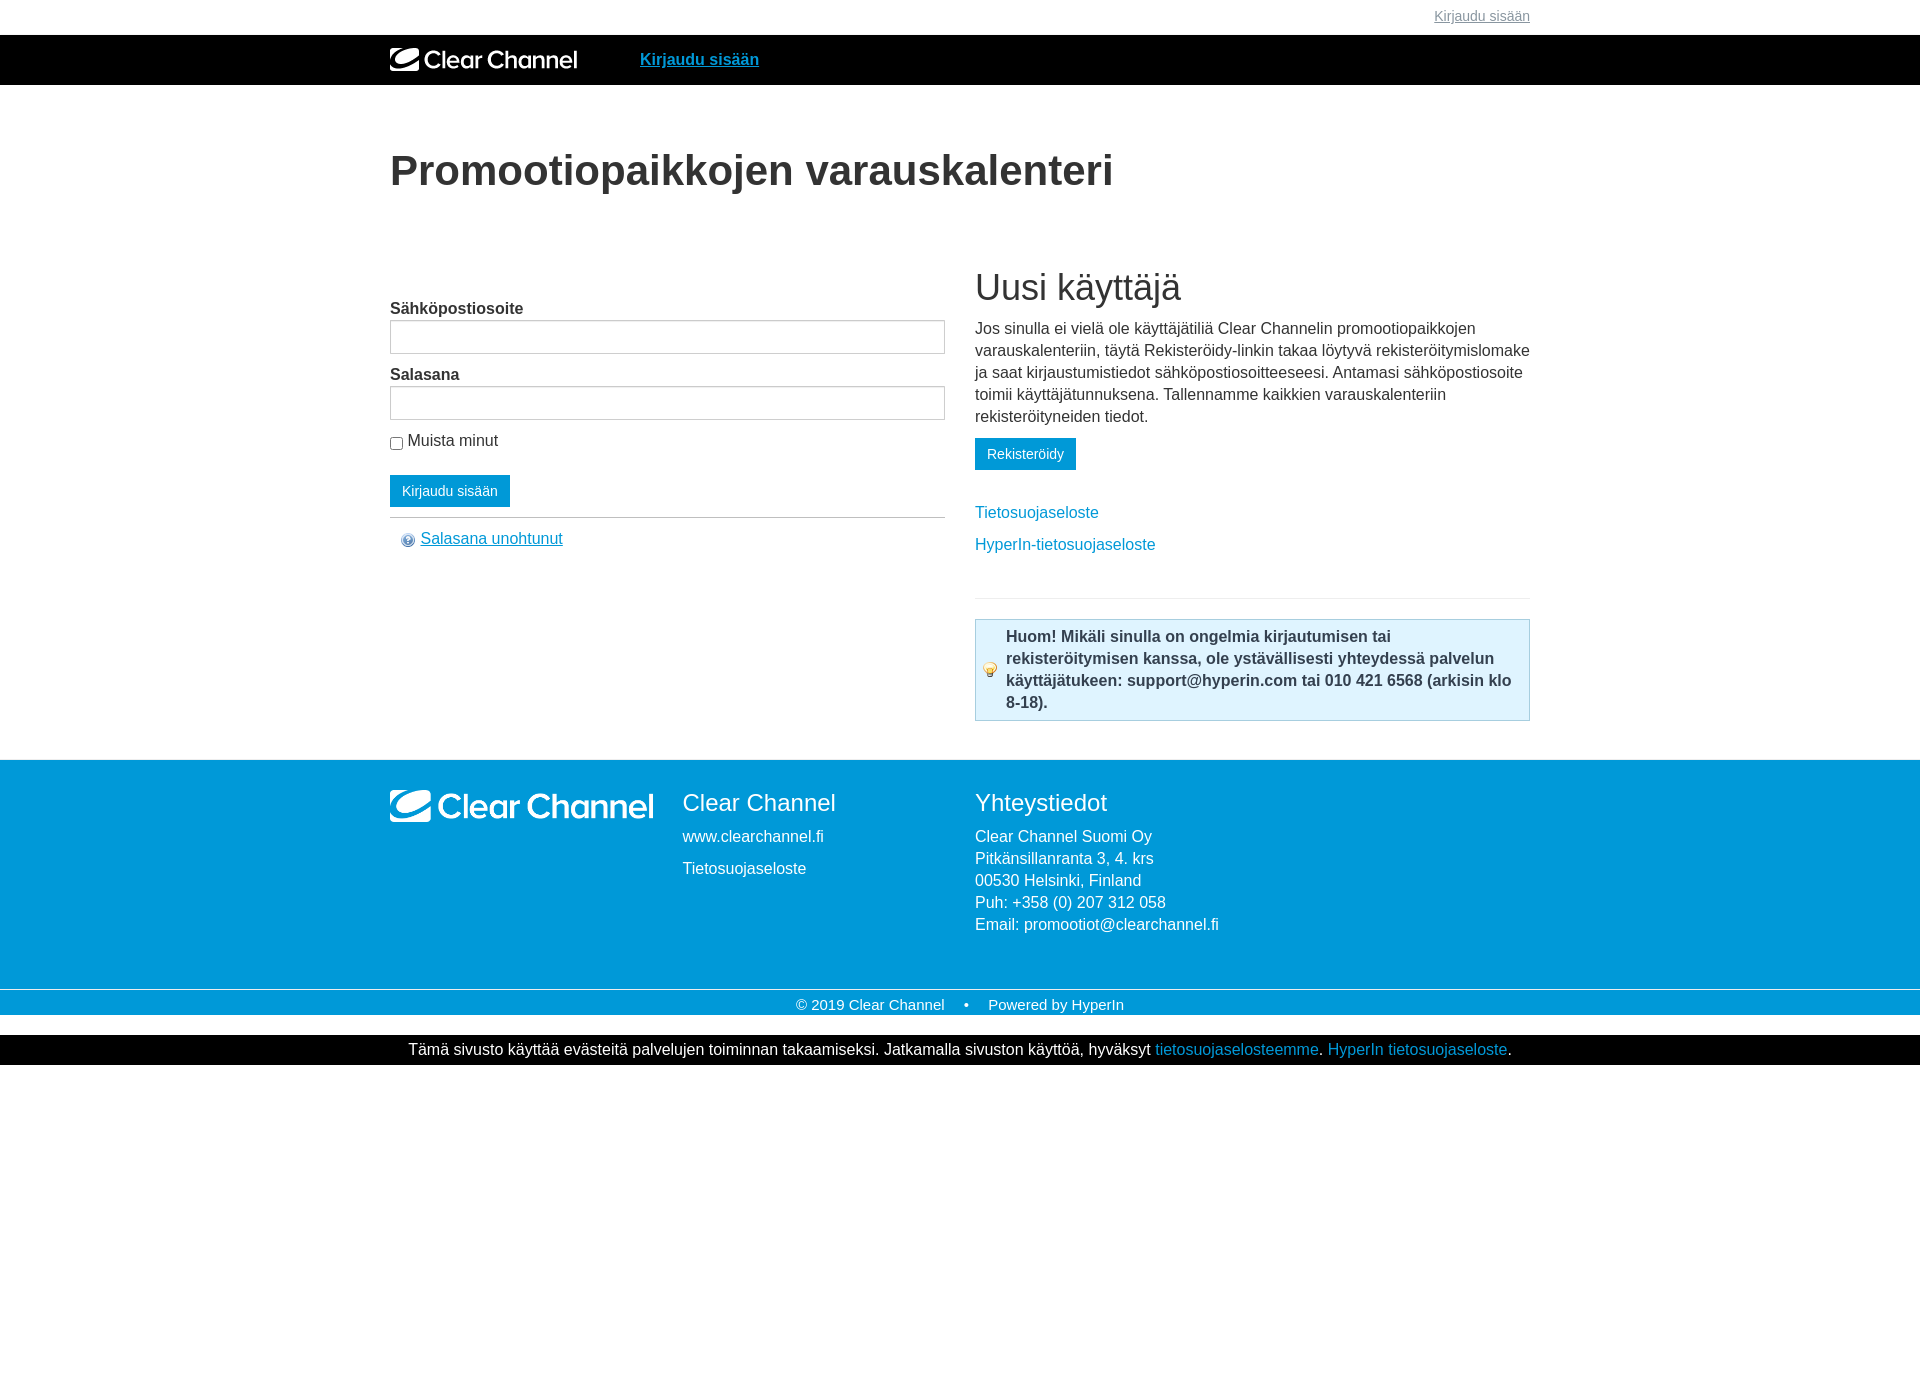 Screenshot for promootiopaikat.fi